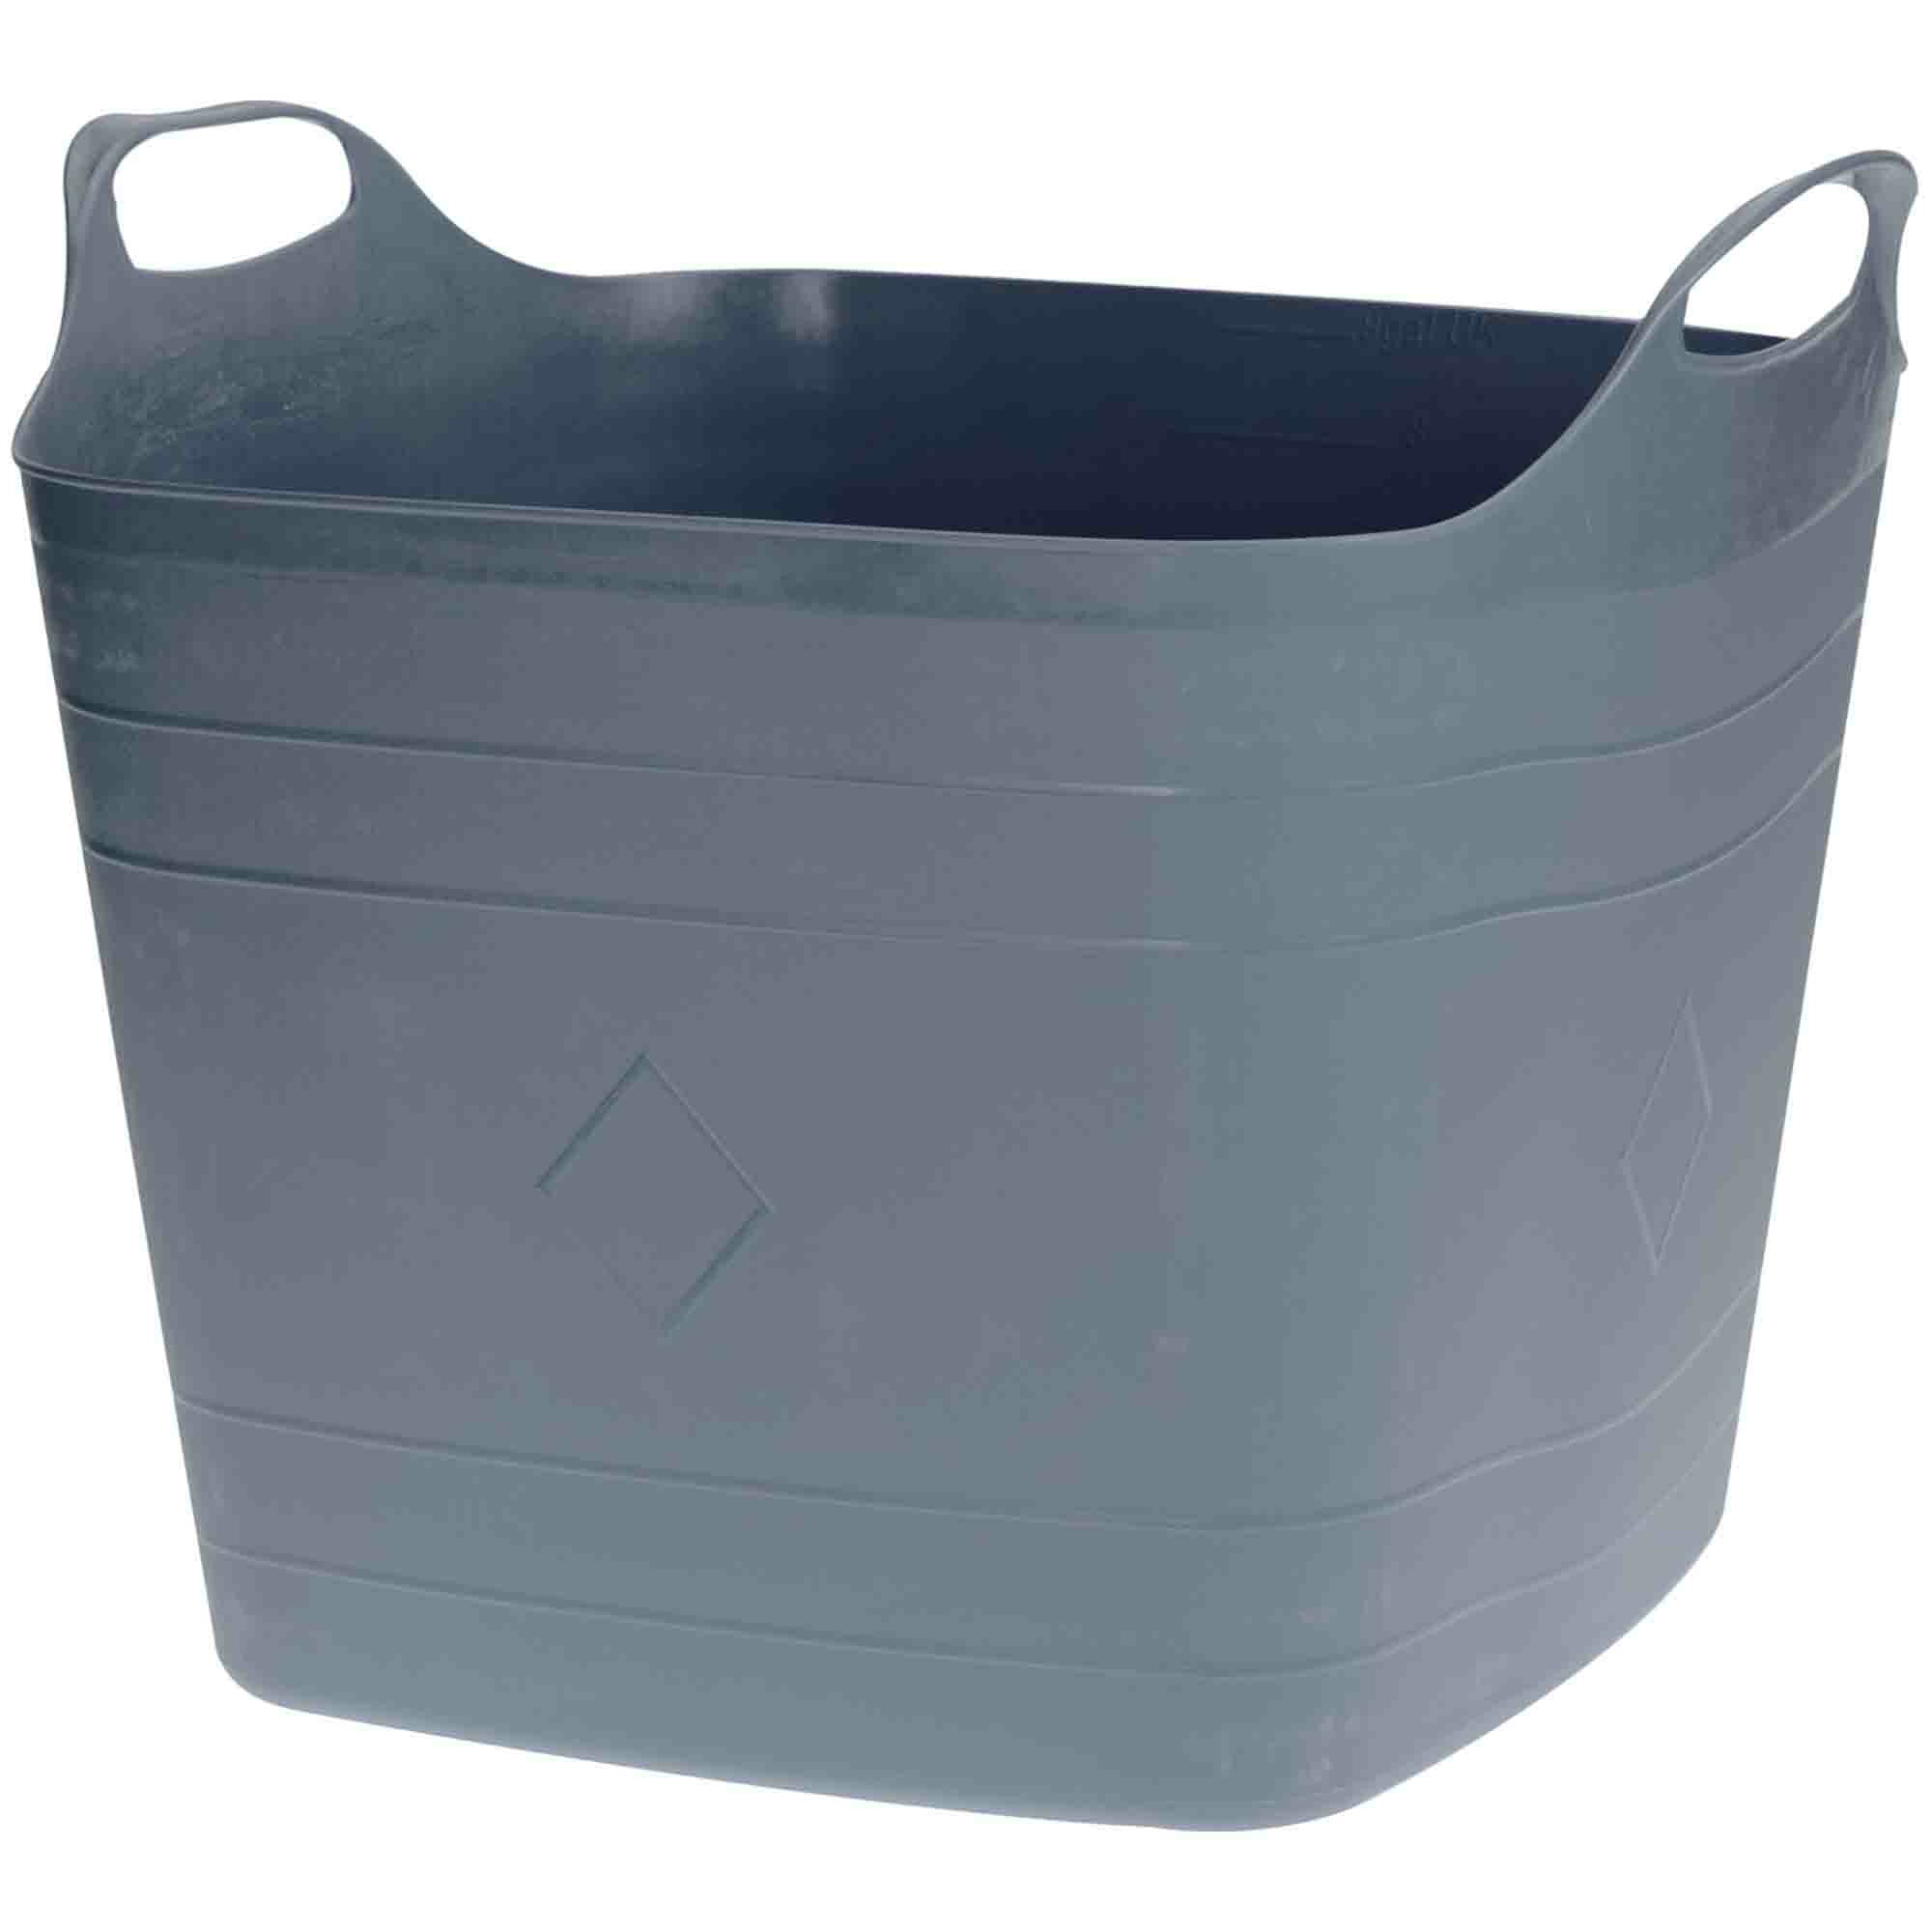 Flexibele kuip grijs 40 liter vierkant kunststof emmer wasmand